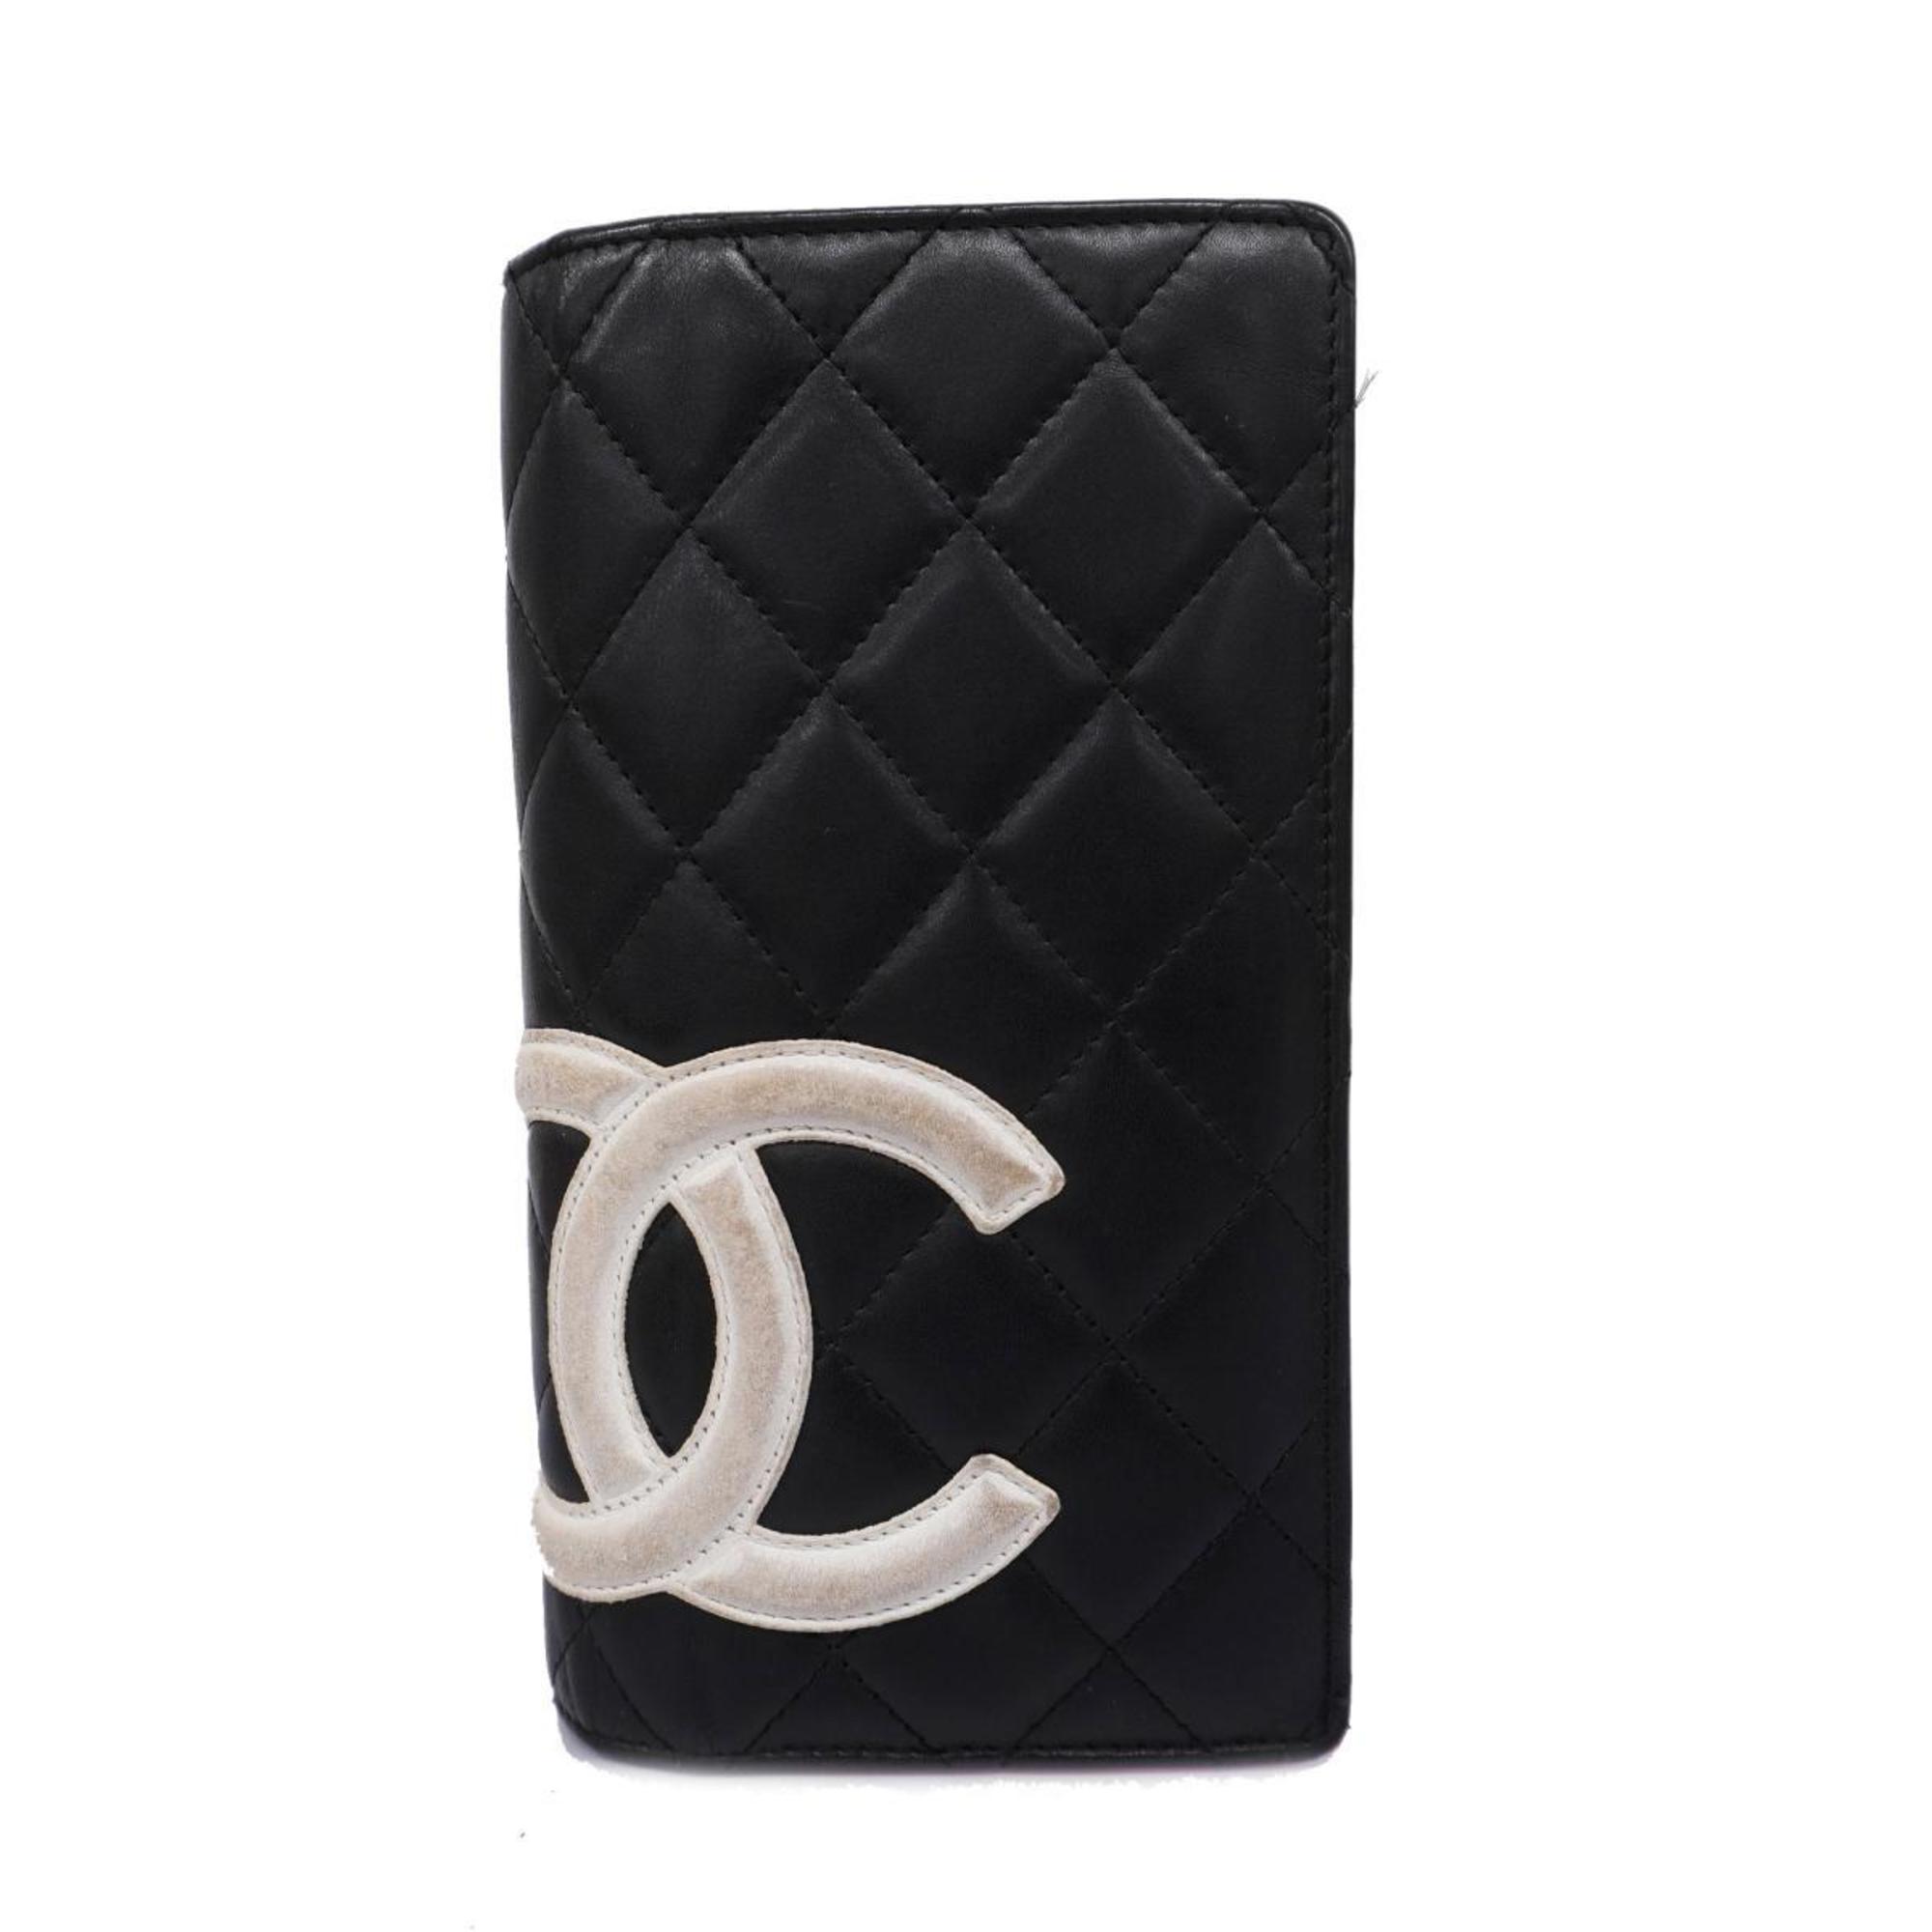 シャネル(Chanel) シャネル 長財布 カンボン ラムスキン ブラック   レディース